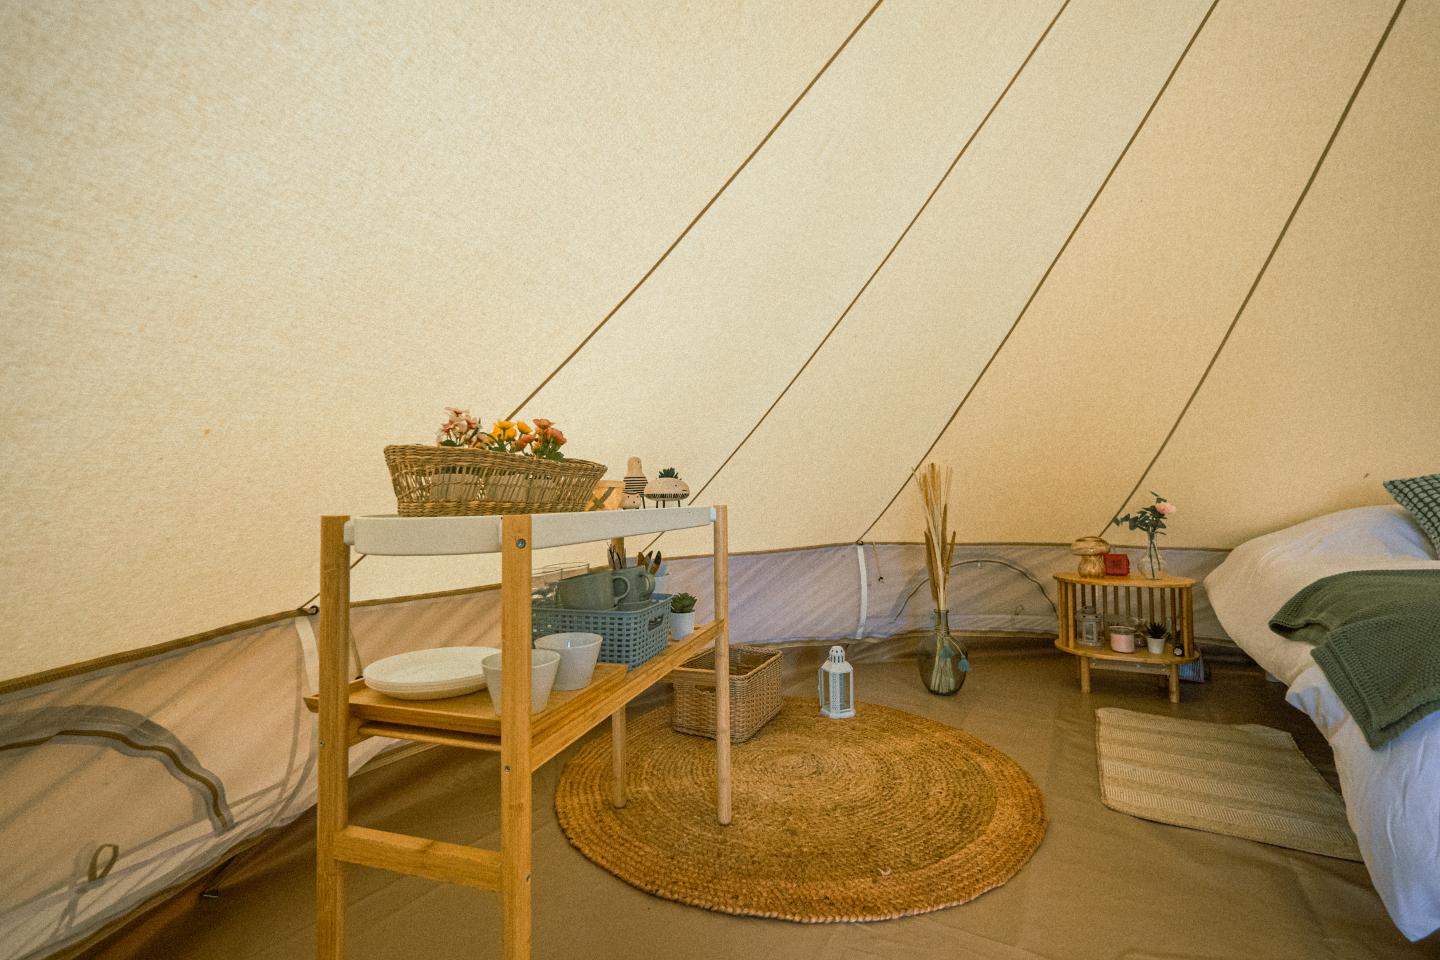 Hôte GreenGo: La tente de Monein - Image 10